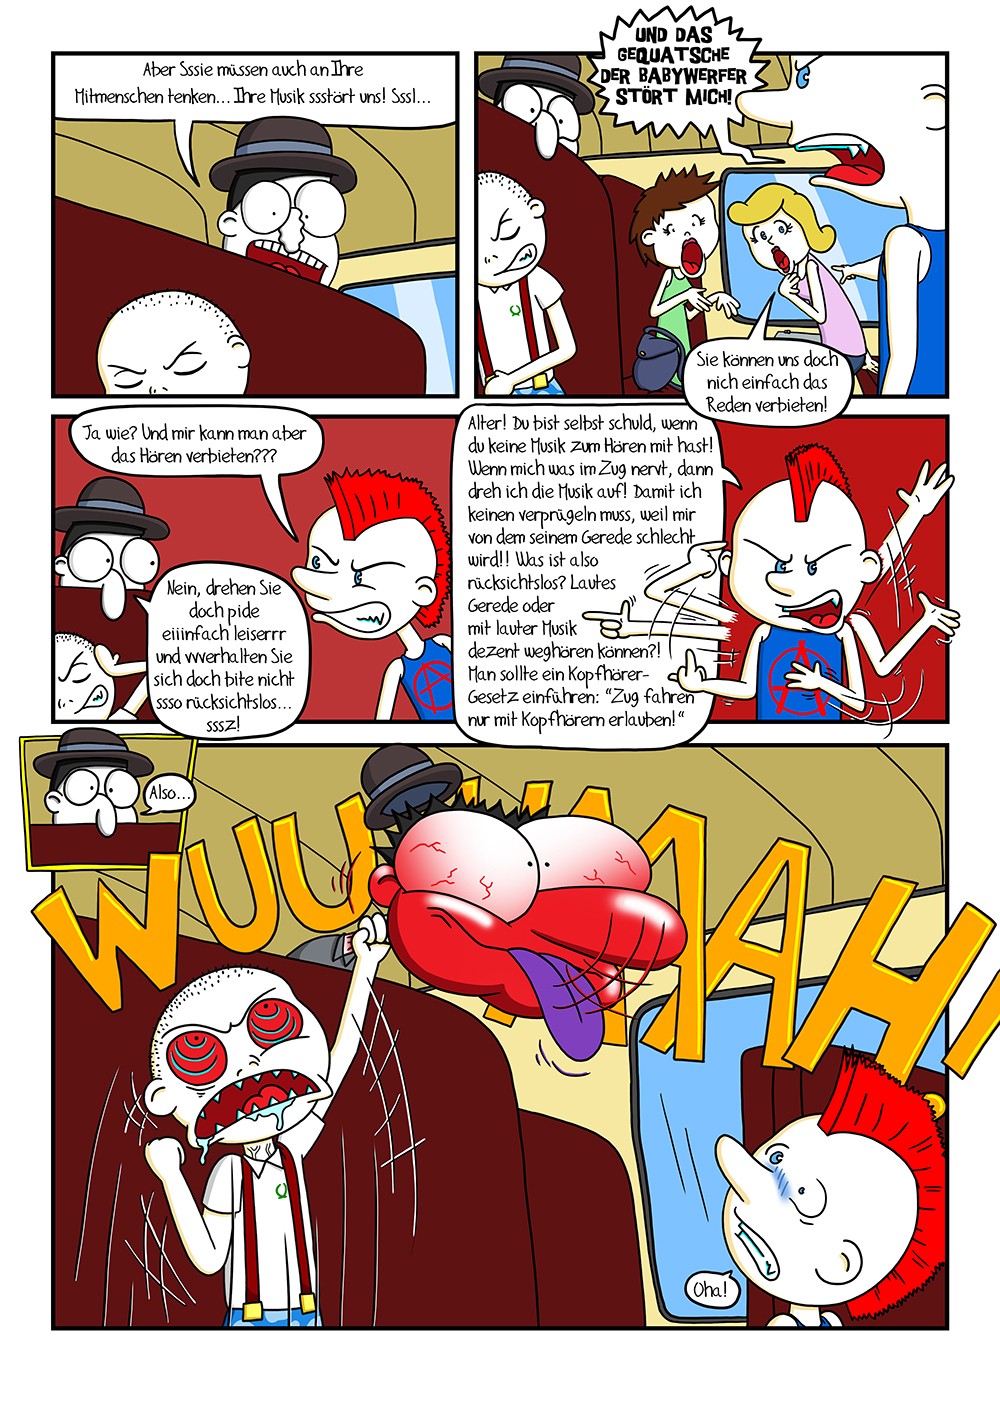 Seite 79 – Punks'n'Banters Comic